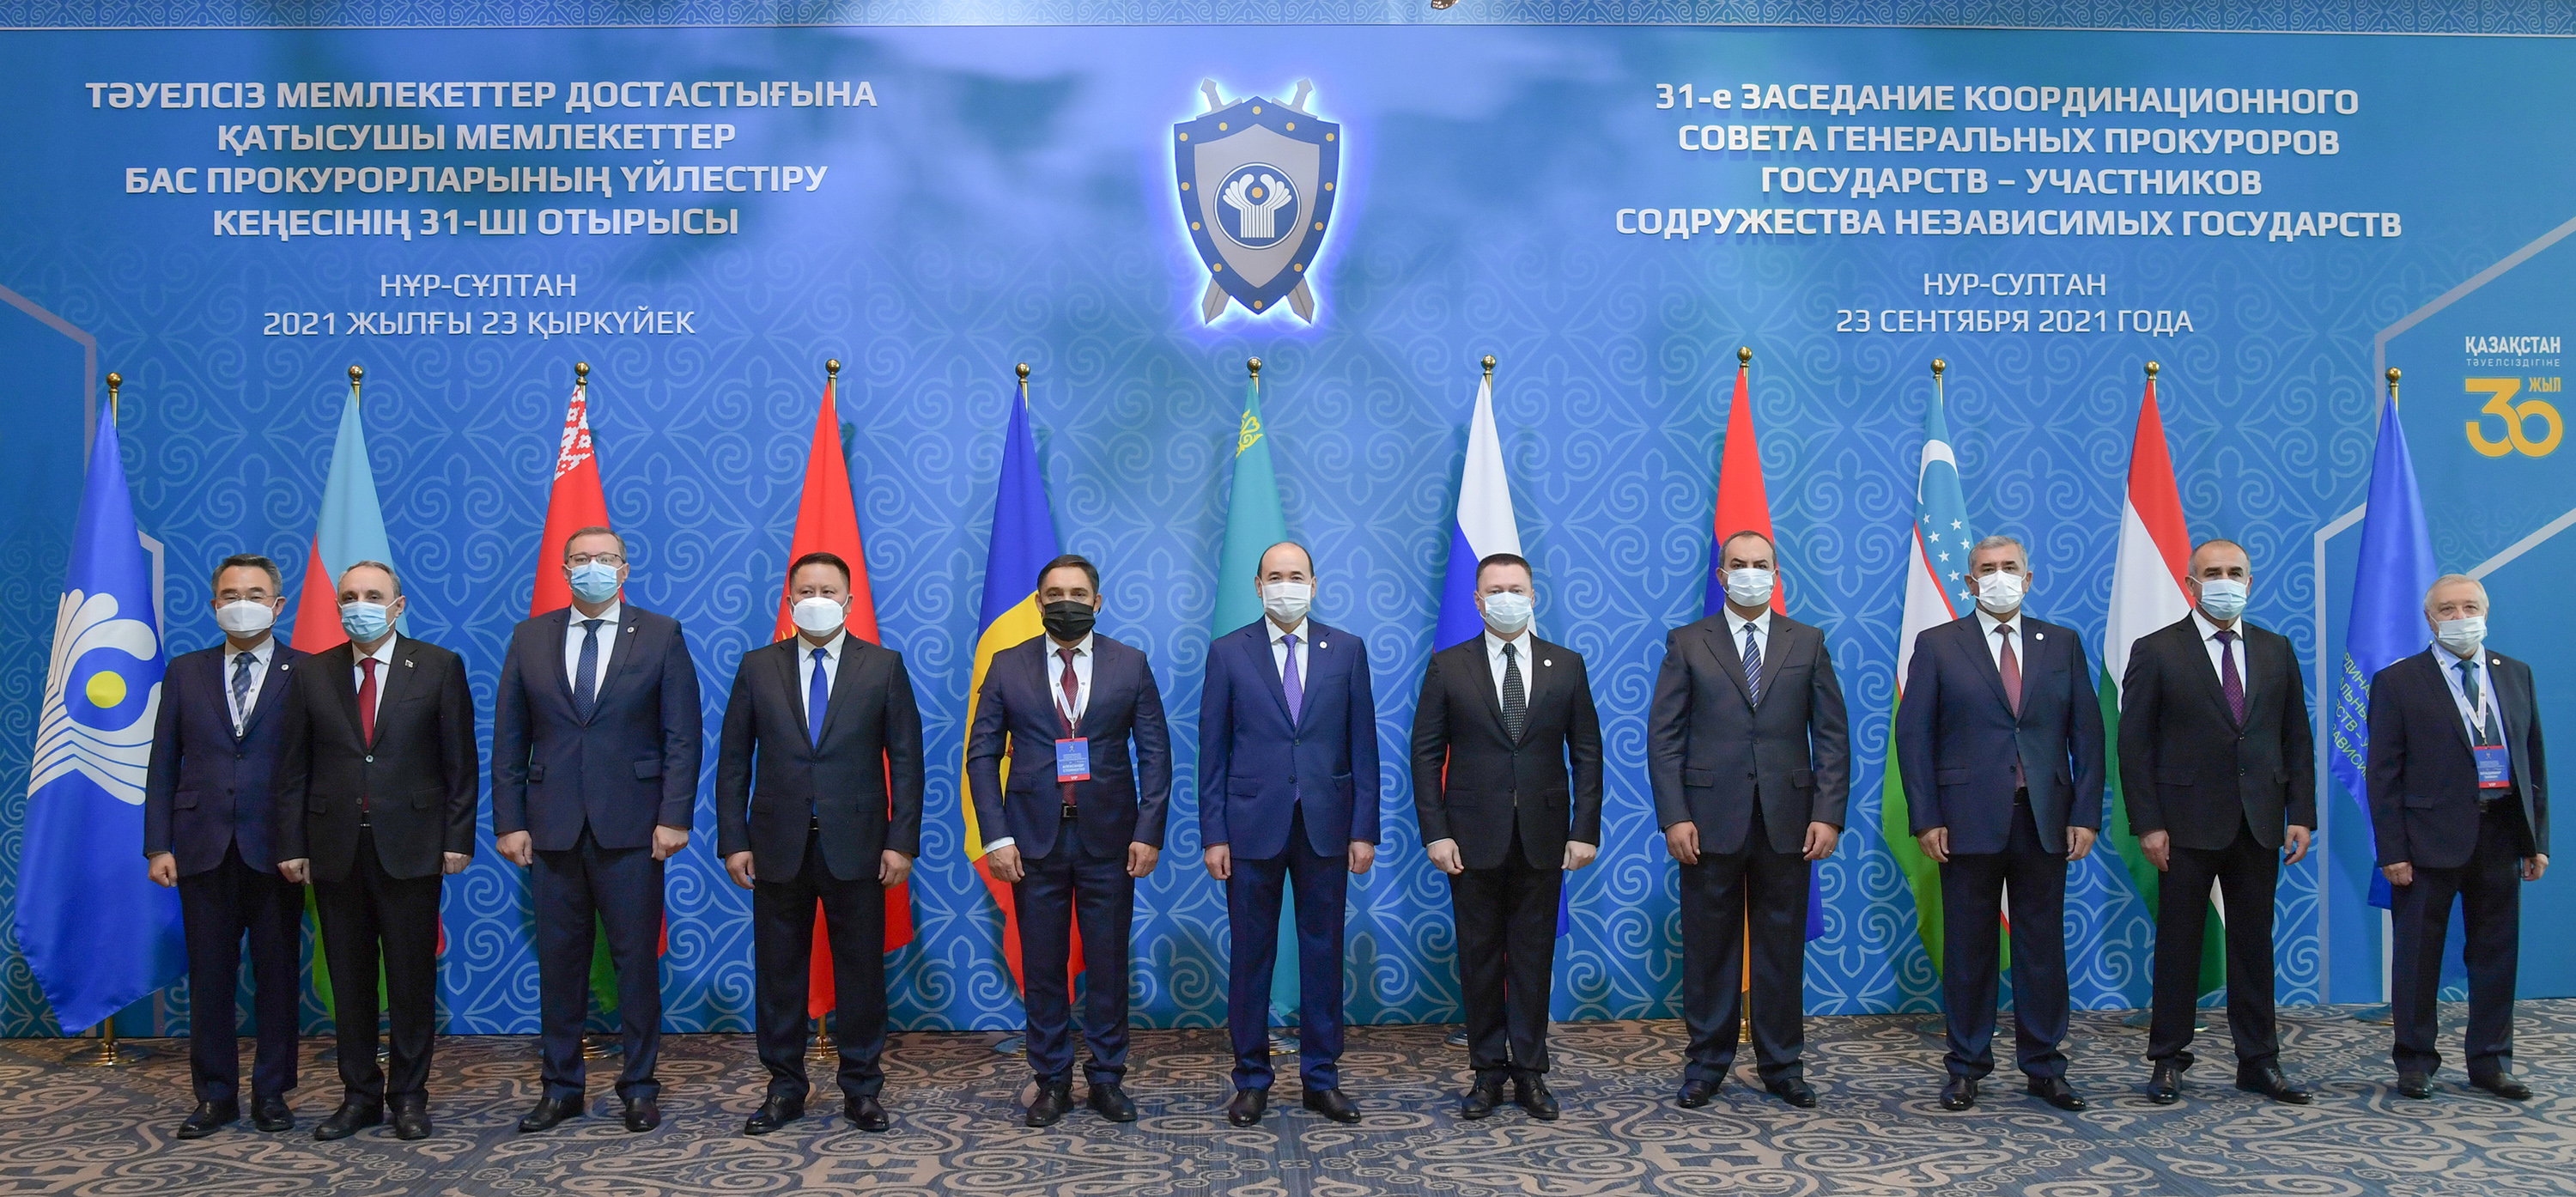 Ежегодное заседание Координационного совета Генеральных прокуроров стран СНГ прошло в Казахстане  (г.Нур-Султан, 23 сентября 2021 г.)